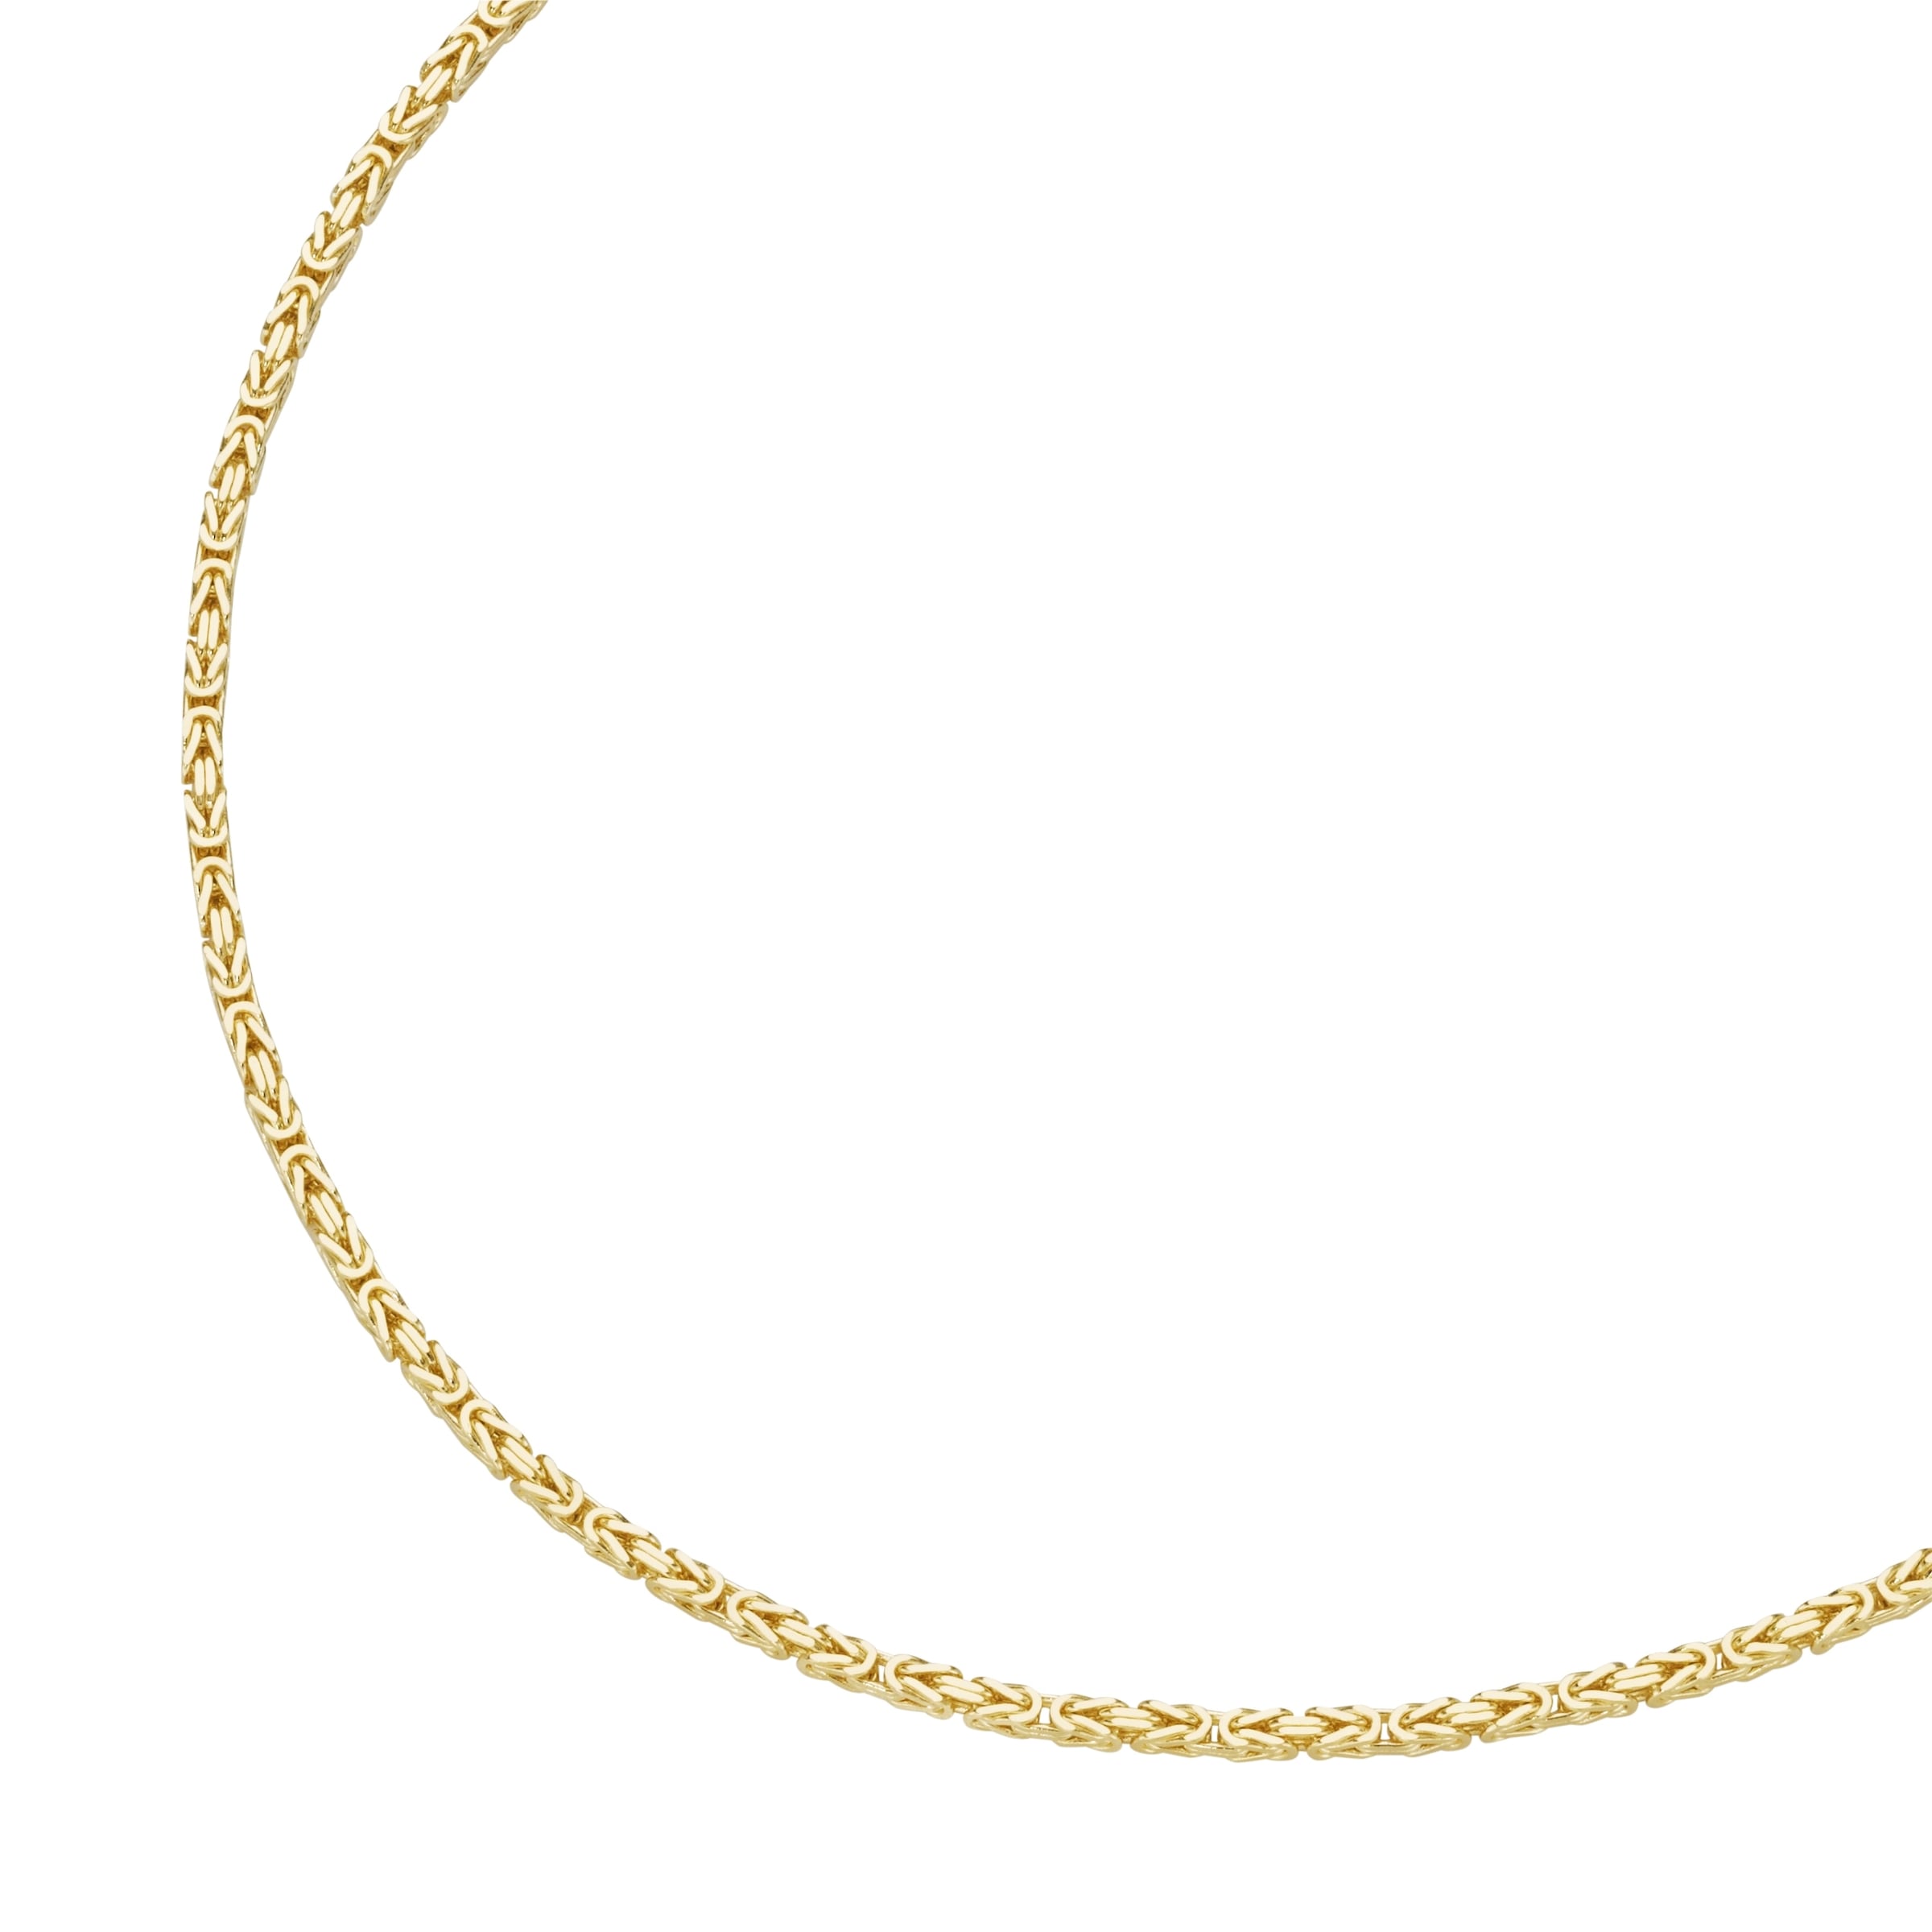 Goldkette »Kette Merano Königskette, OTTO Gold online Luigi 585« massiv, bei